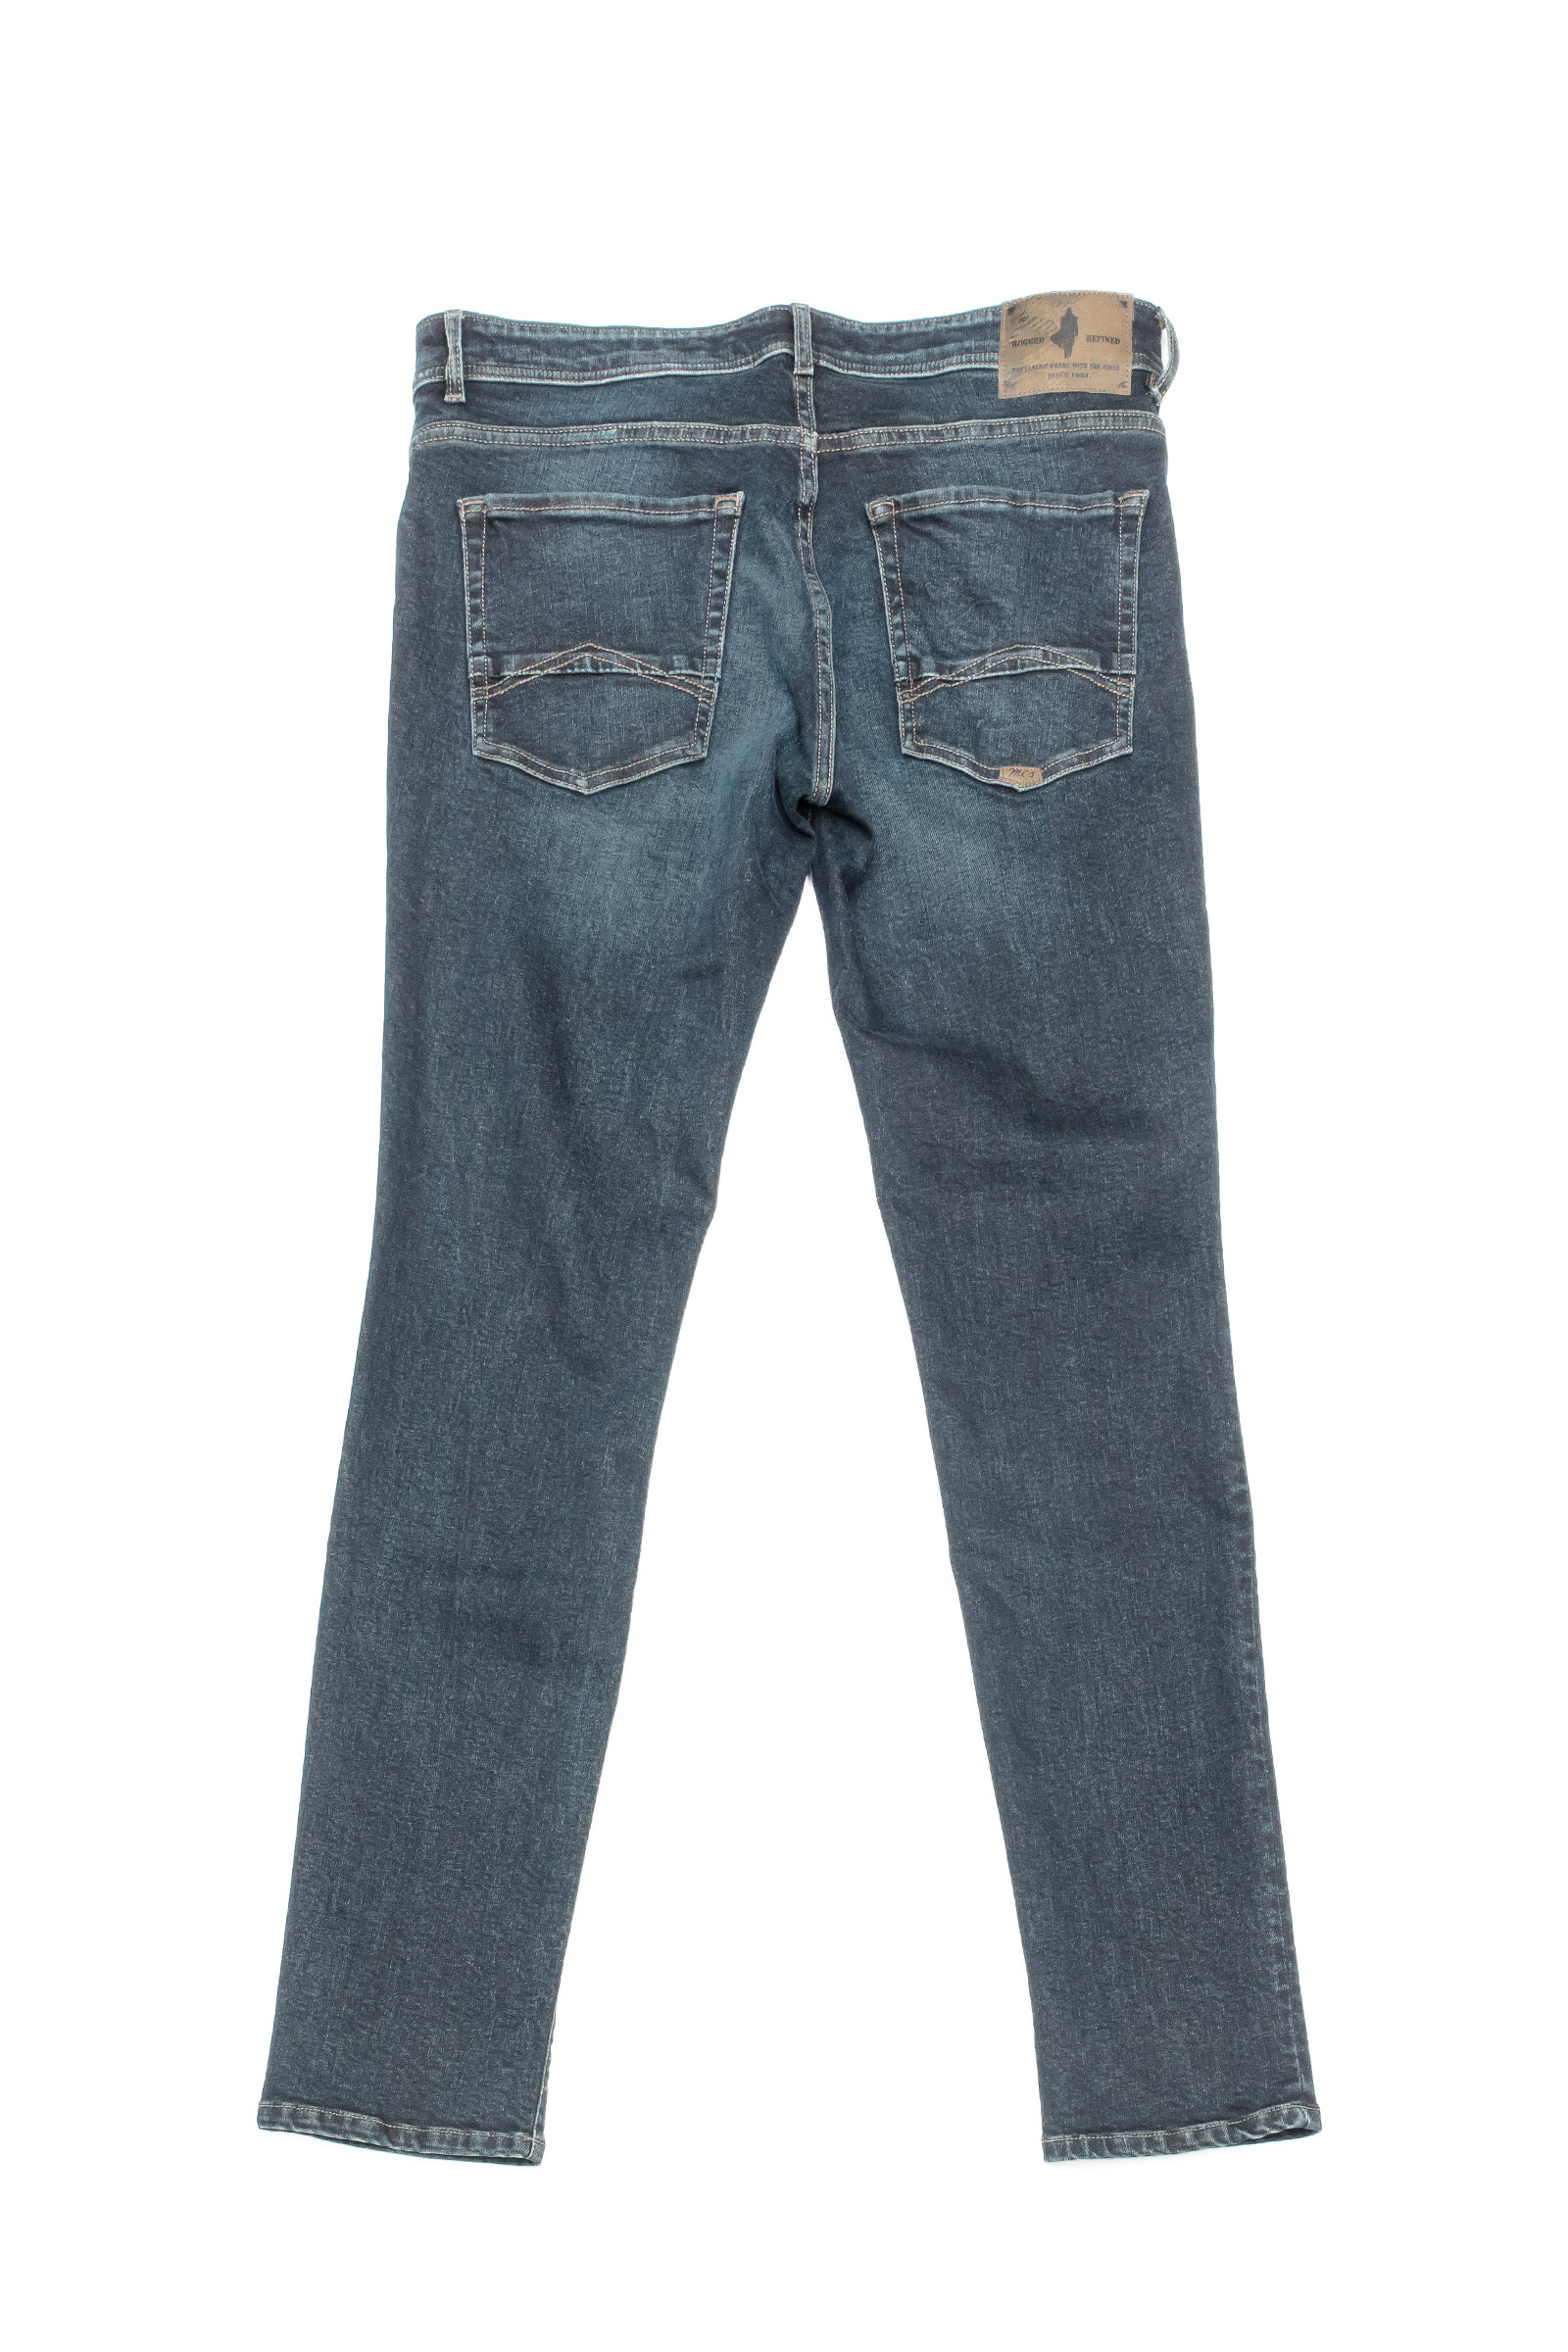 Regular Tapered blue brown jeans - MCS Men